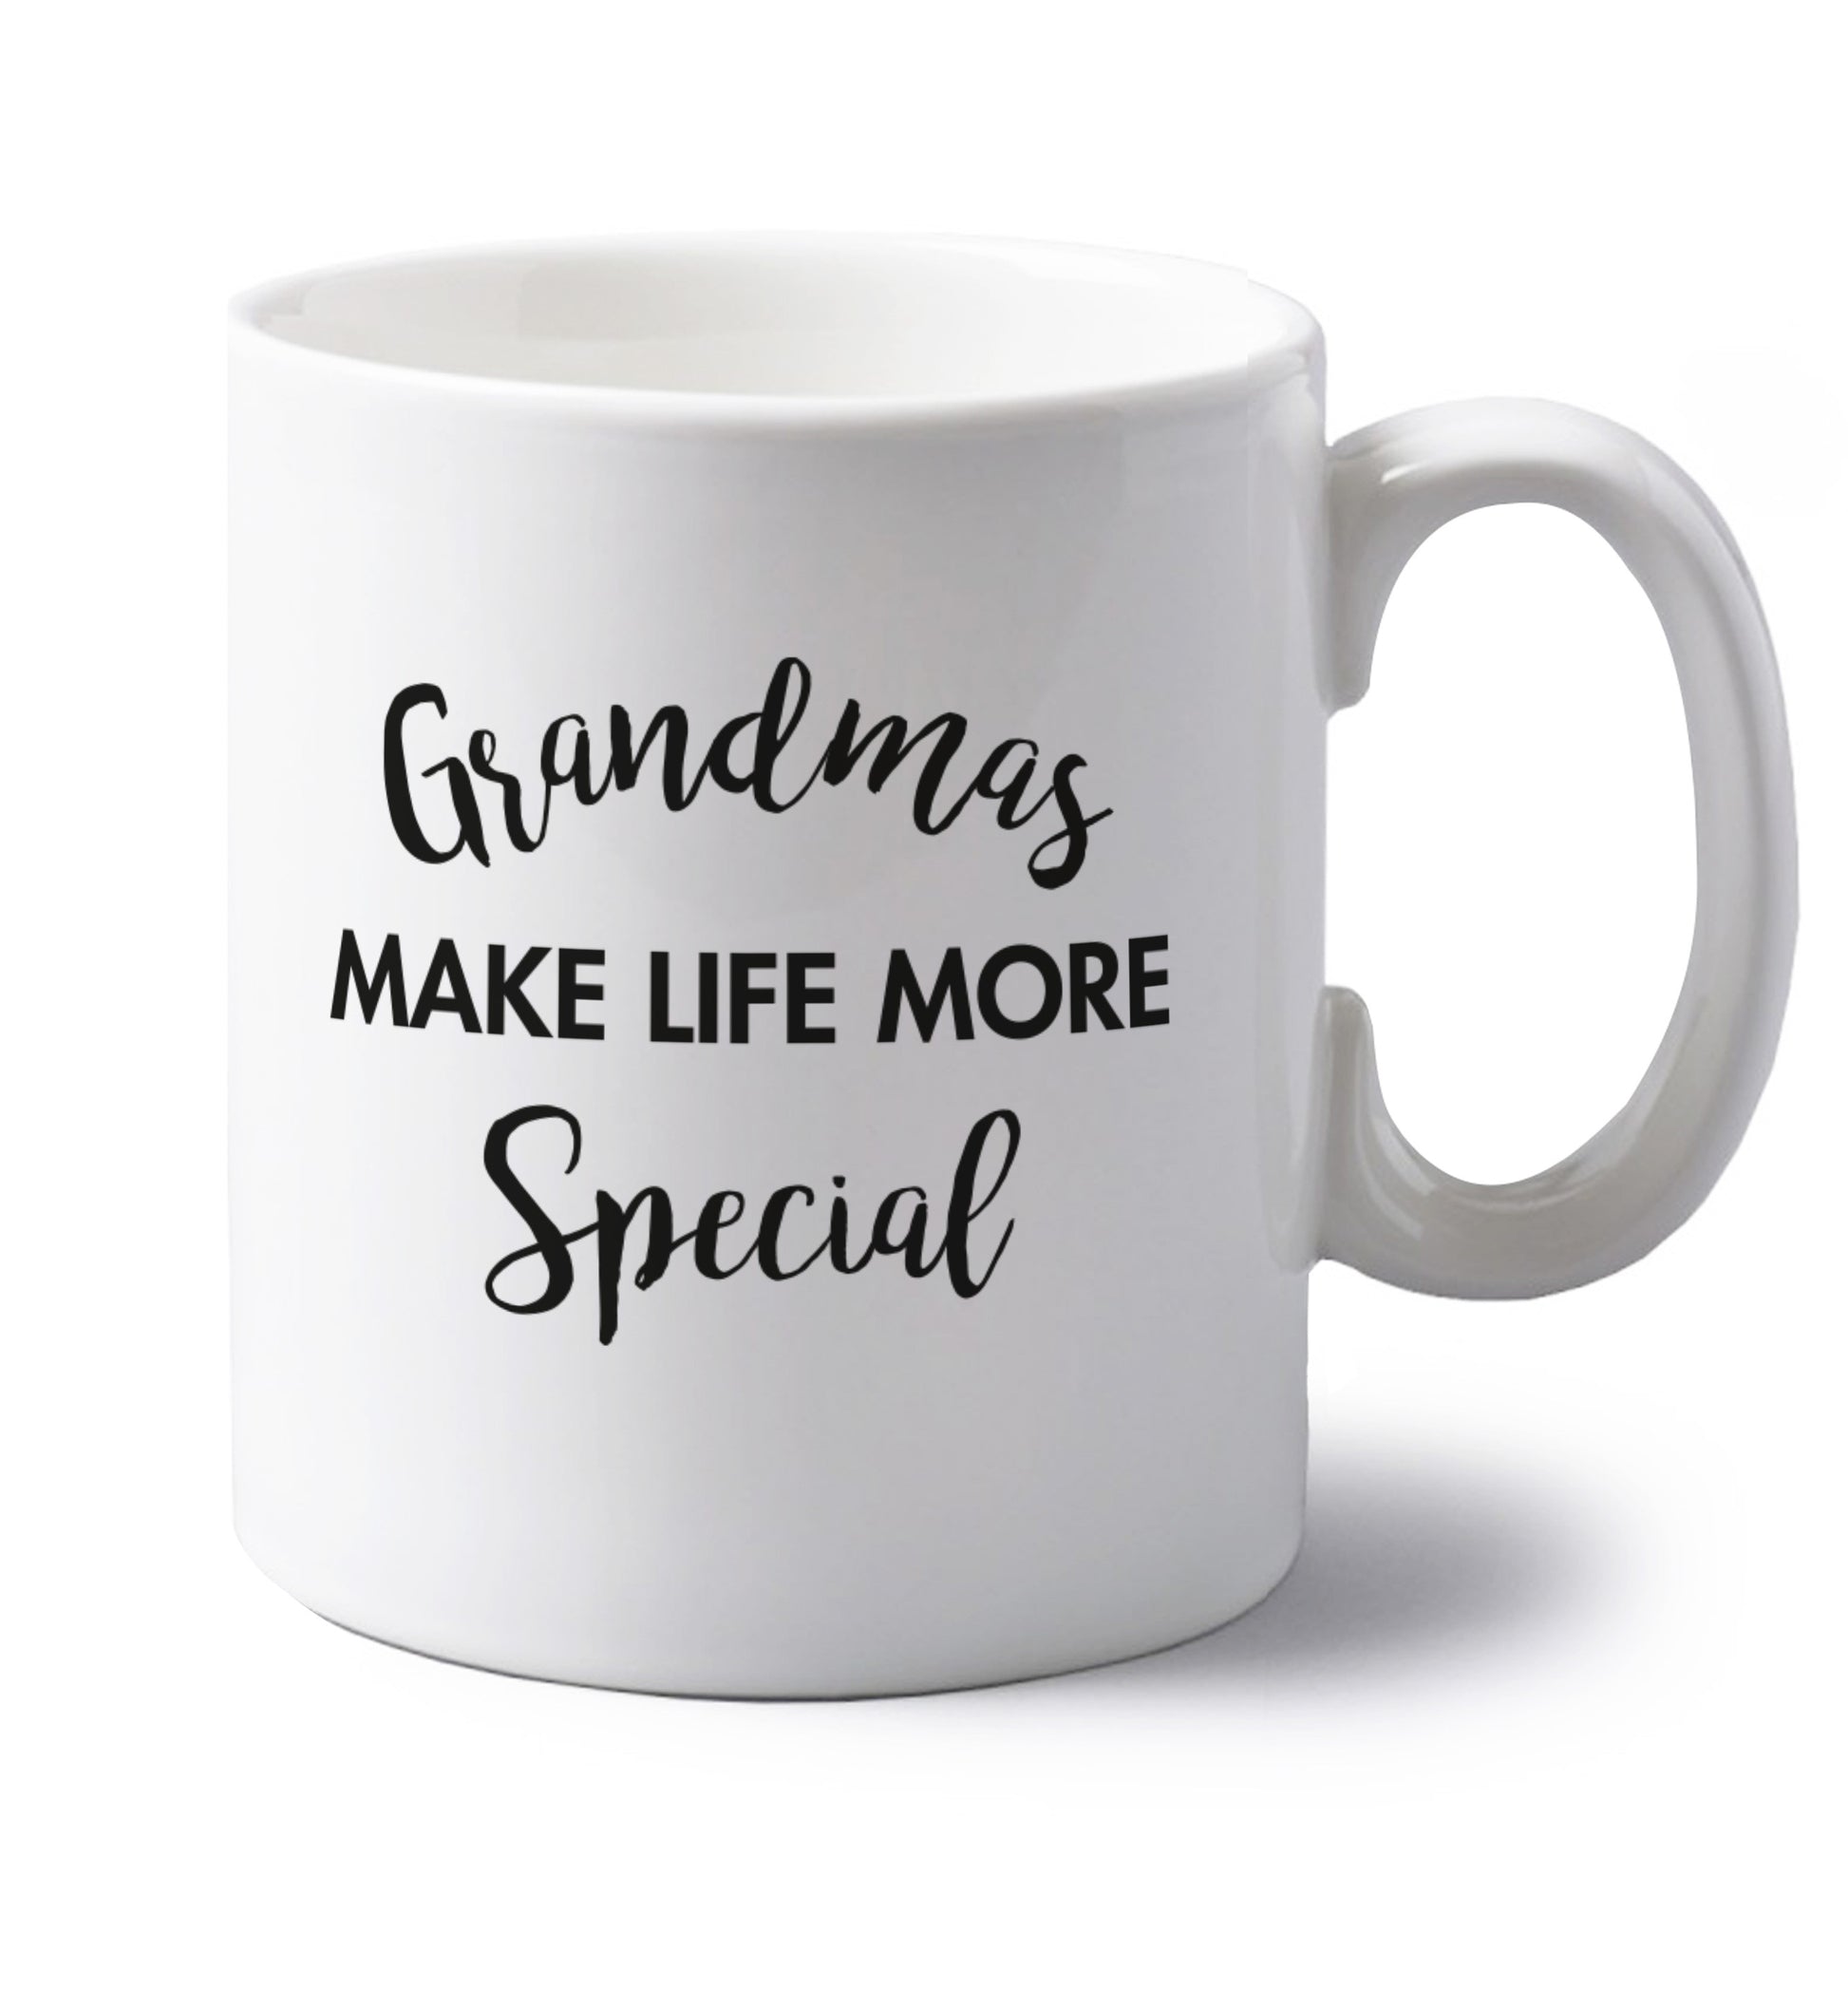 Grandmas make life more special left handed white ceramic mug 